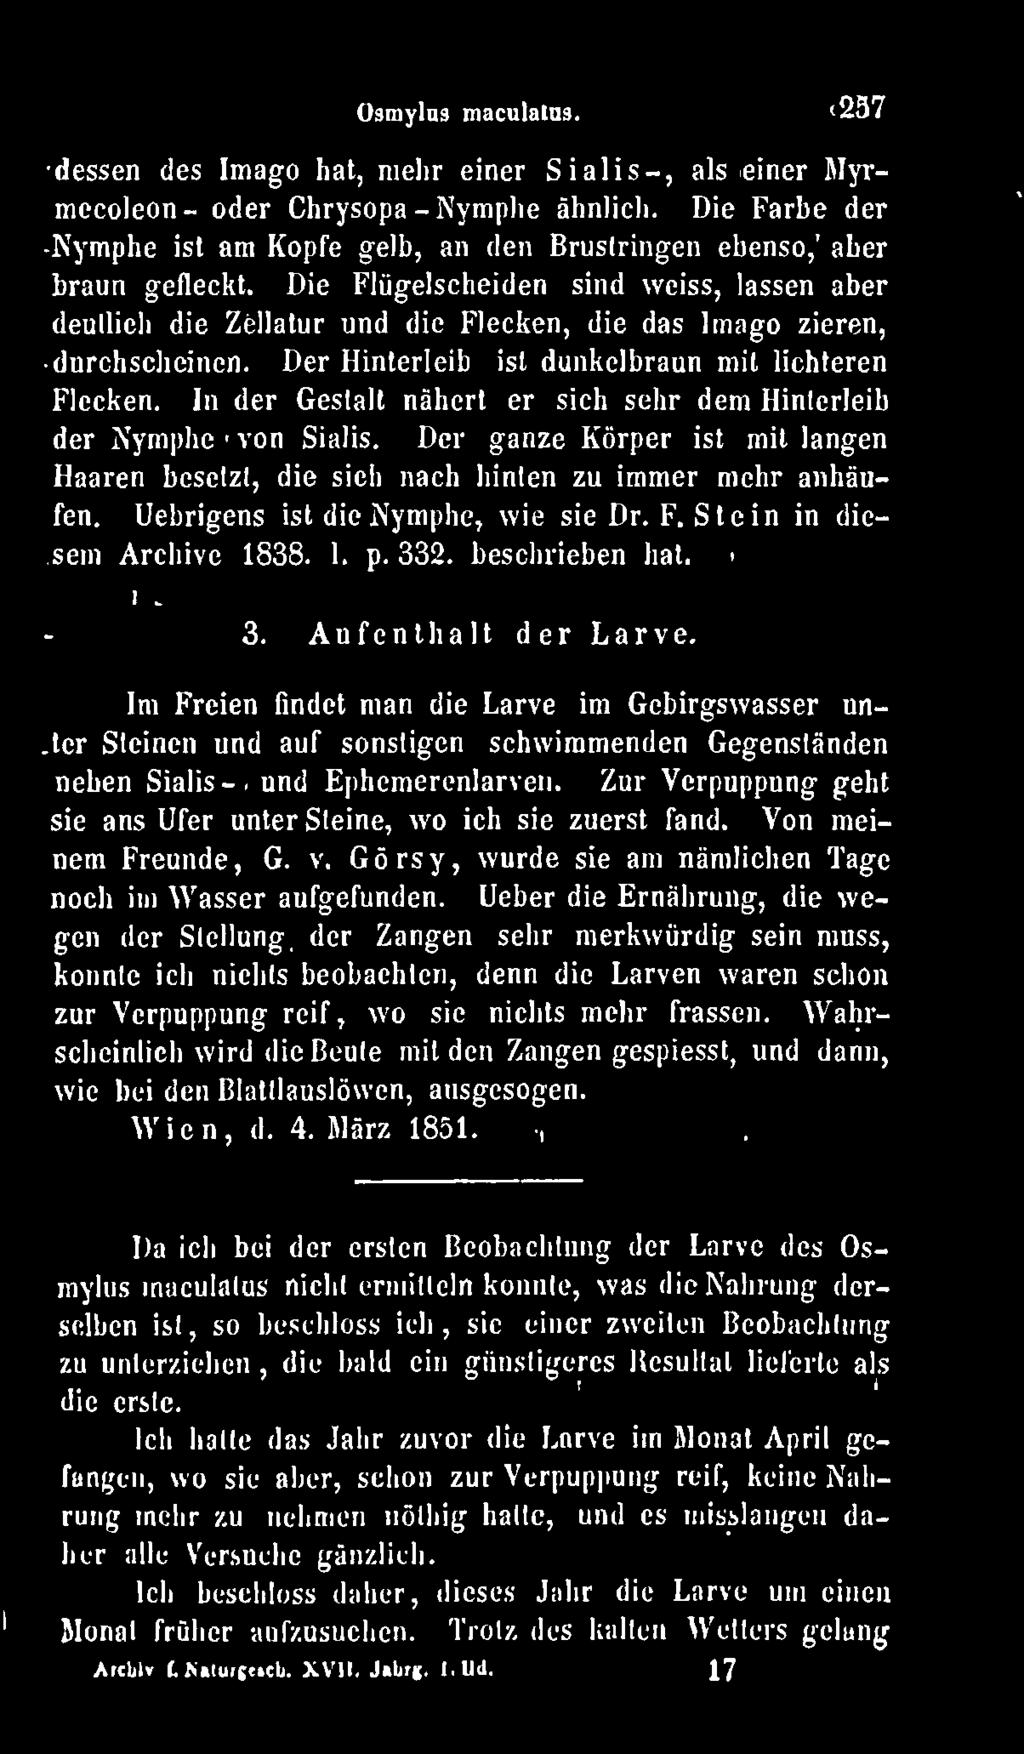 Uebrigens ist die Nymphe, wie sie Dr. F. Stein in diesem Archive 1838. I. p. 332. beschrieben hat. 3. Aufenthalt der Larve.